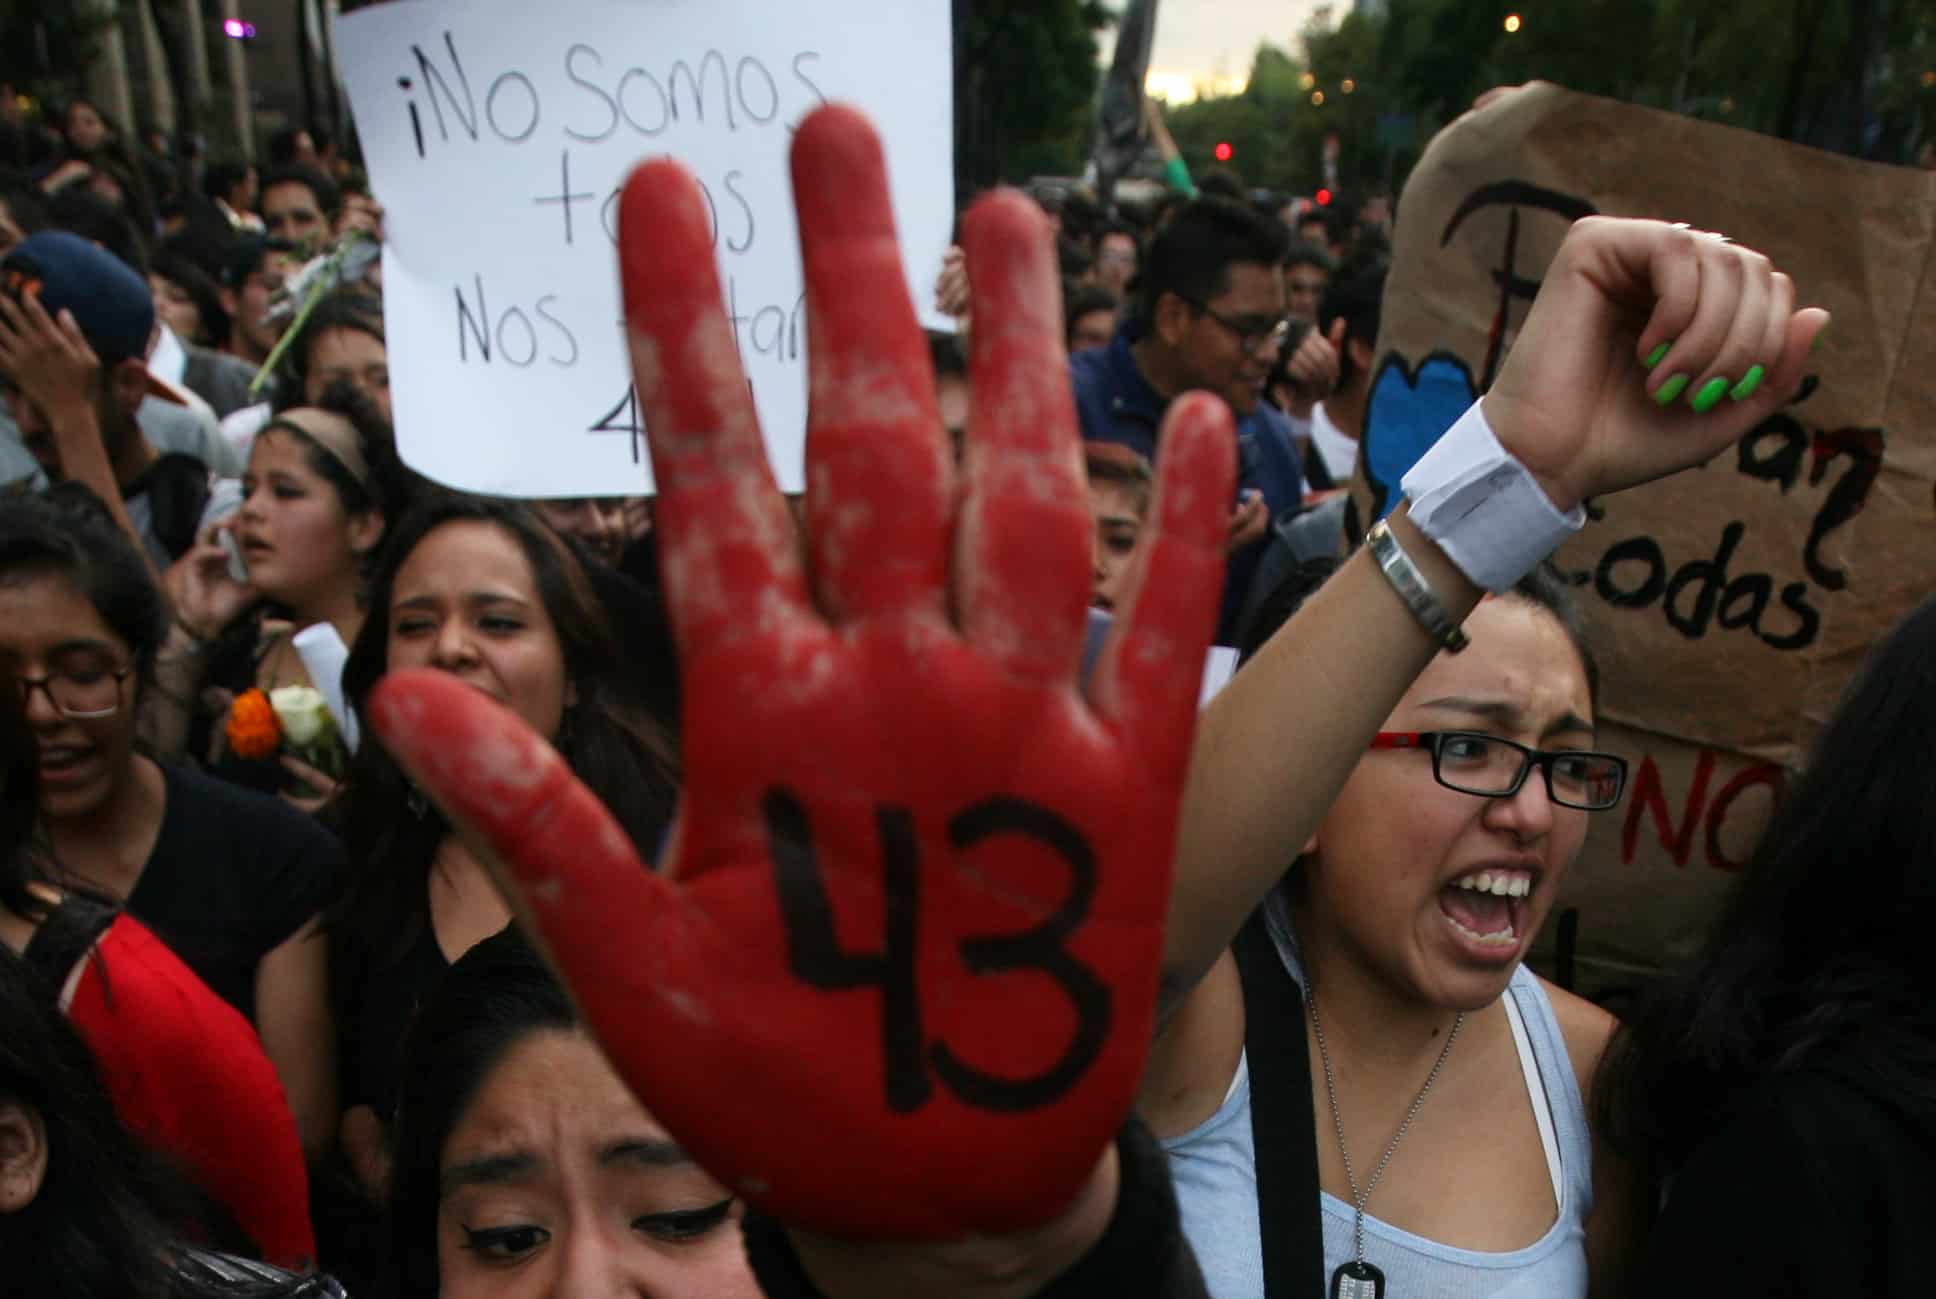 Ficha de datos del caso Ayotzinapa: Investigando la desaparición forzada de 43 estudiantes en México - WOLA